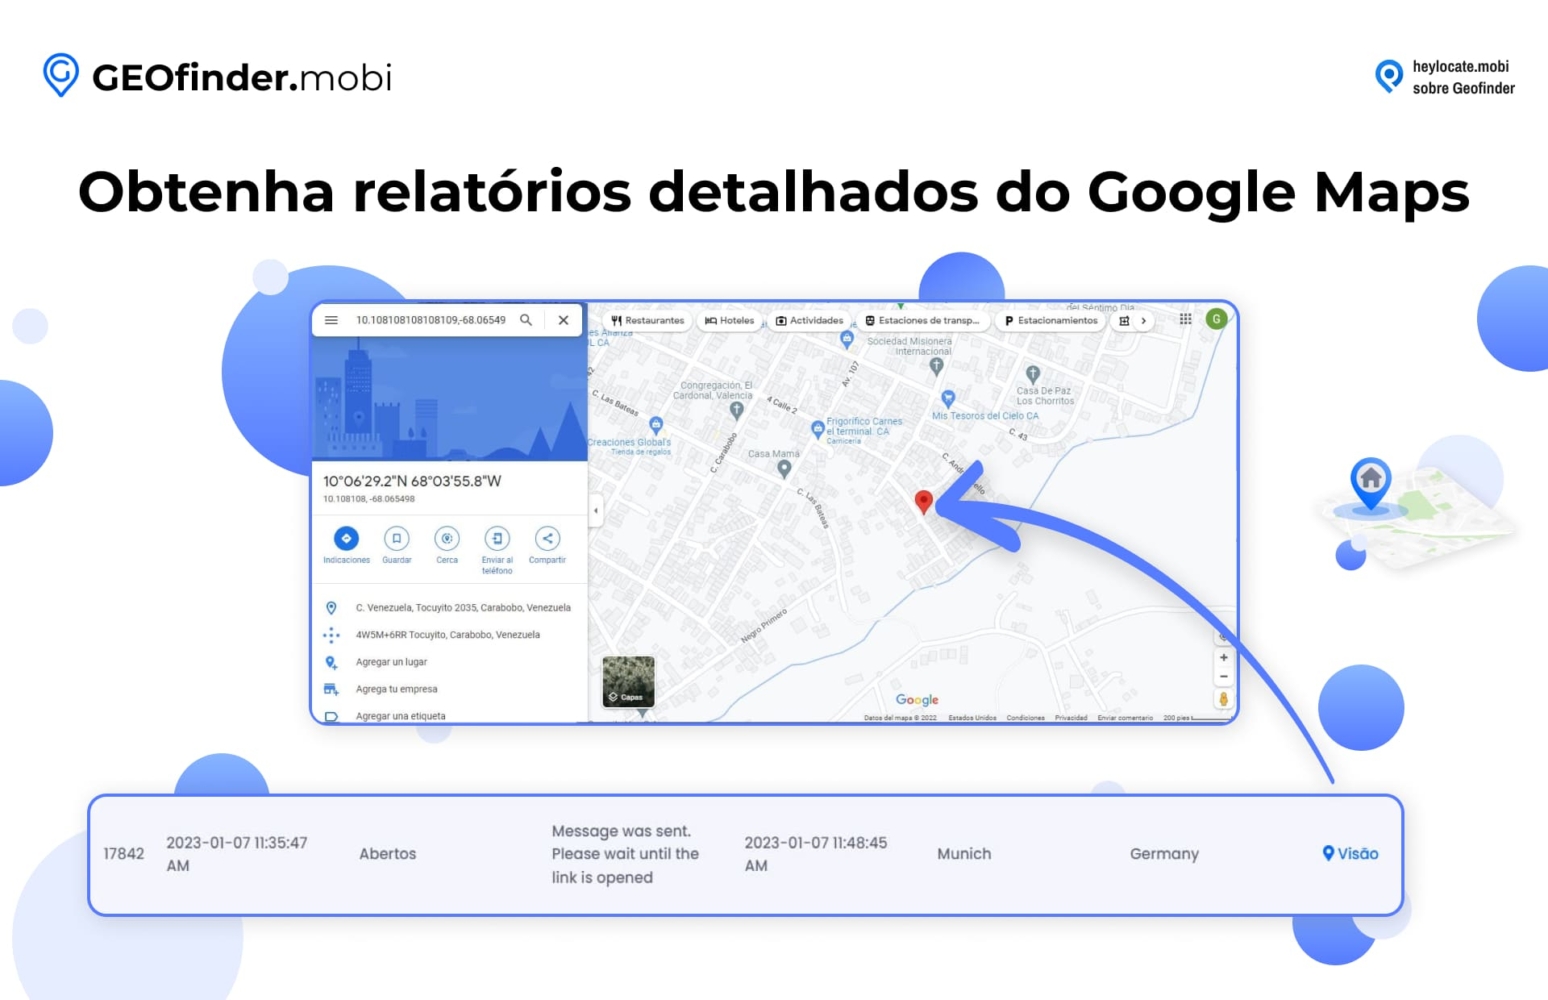 Exibição do recurso do GEOfinder.mobi para obter relatórios detalhados do Google Maps, mostrando um mapa e coordenadas de localização, juntamente com uma visualização detalhada de um mapa destacando uma área específica com um marcador de localização.